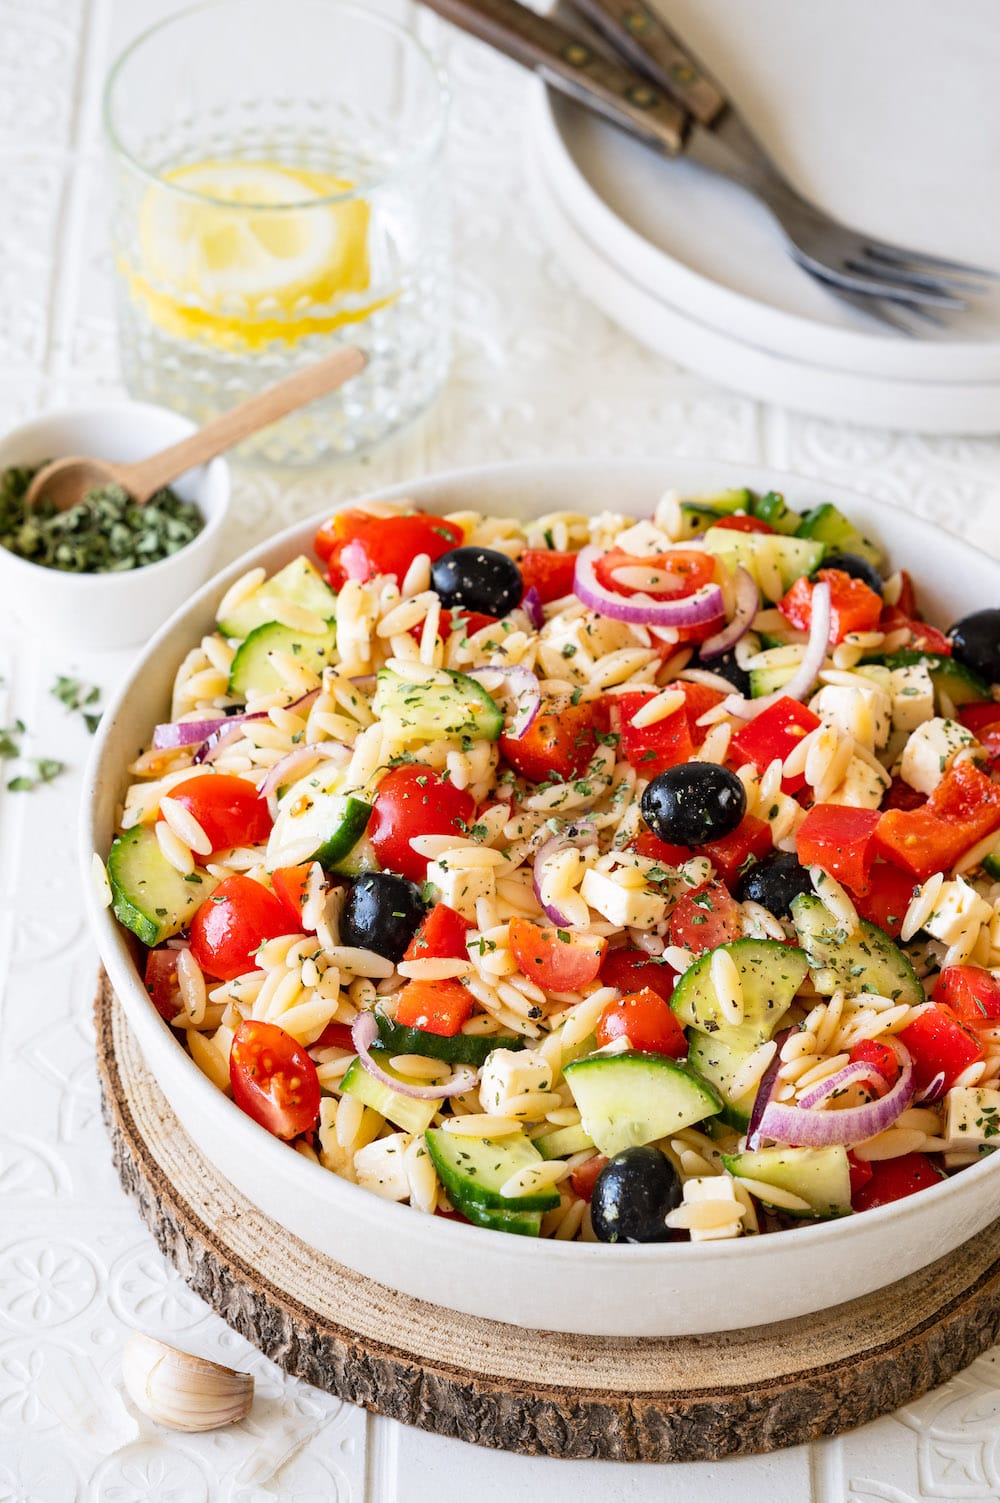 Griechischer Kritharaki-Salat mit Oliven, Tomaten, Paprika, Gurken, Feta und Zwiebeln in einer Schüssel angerichtet.